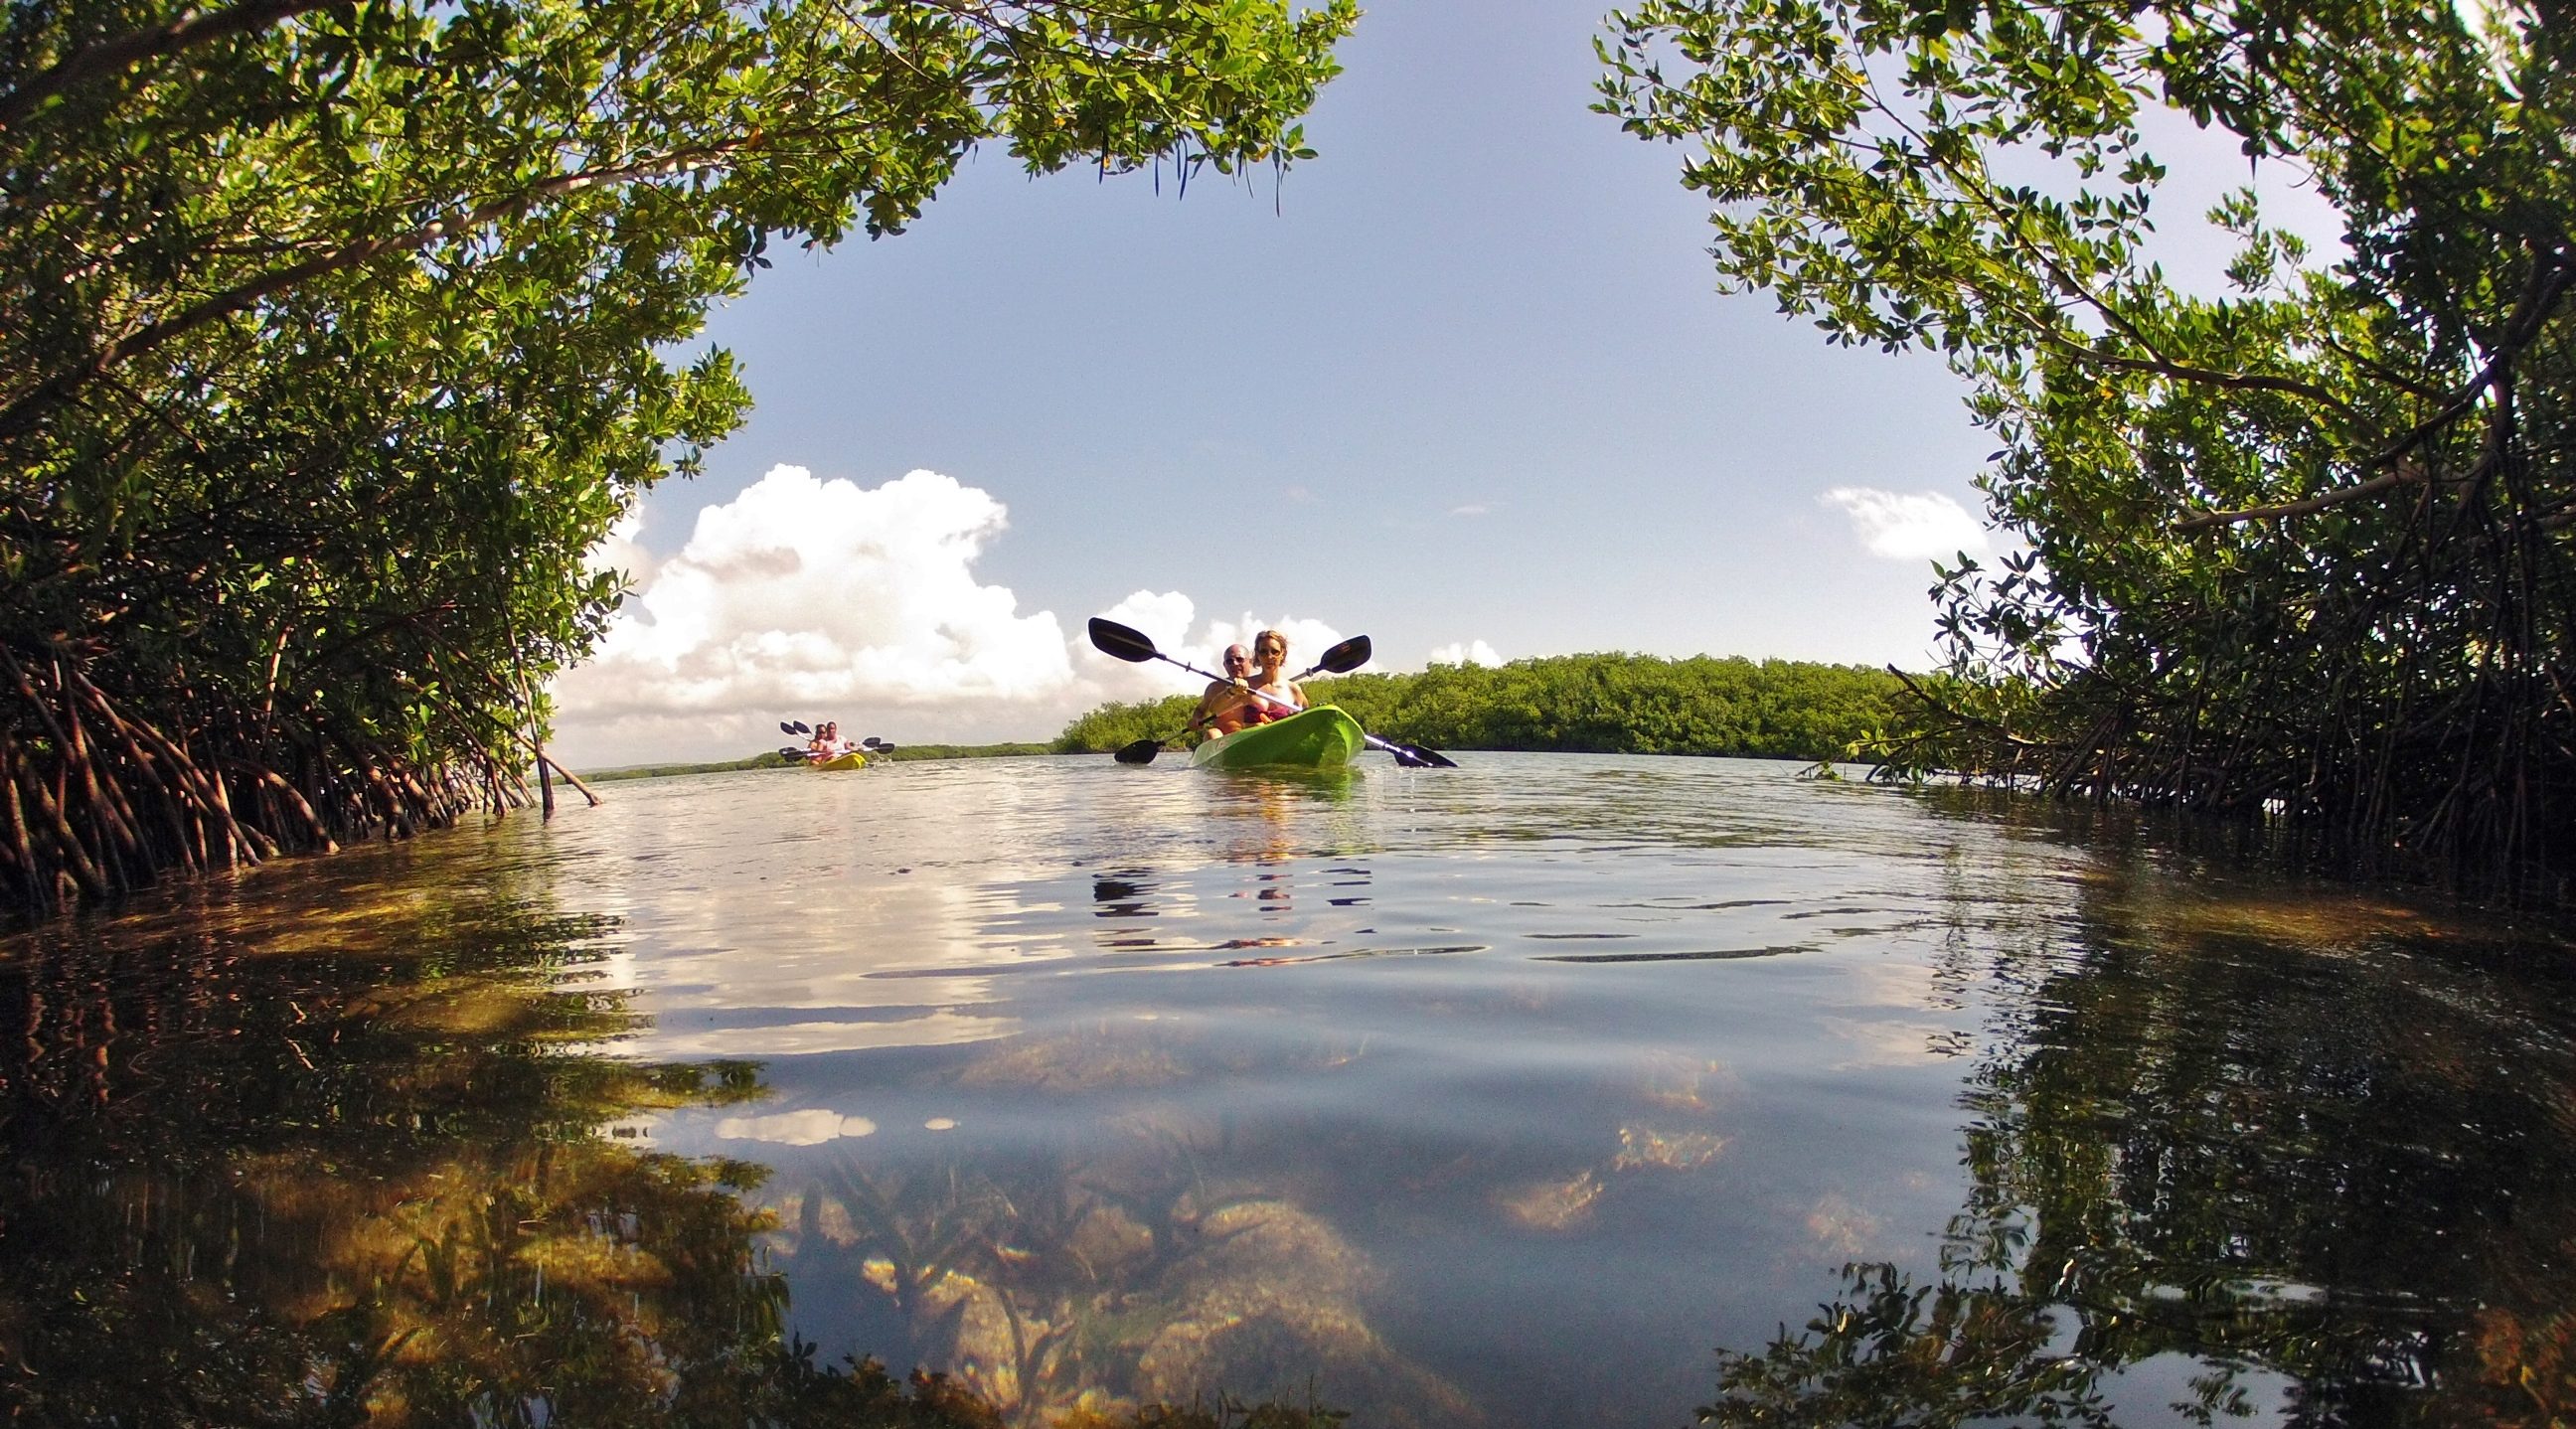 Kayak a tropical Mangrove